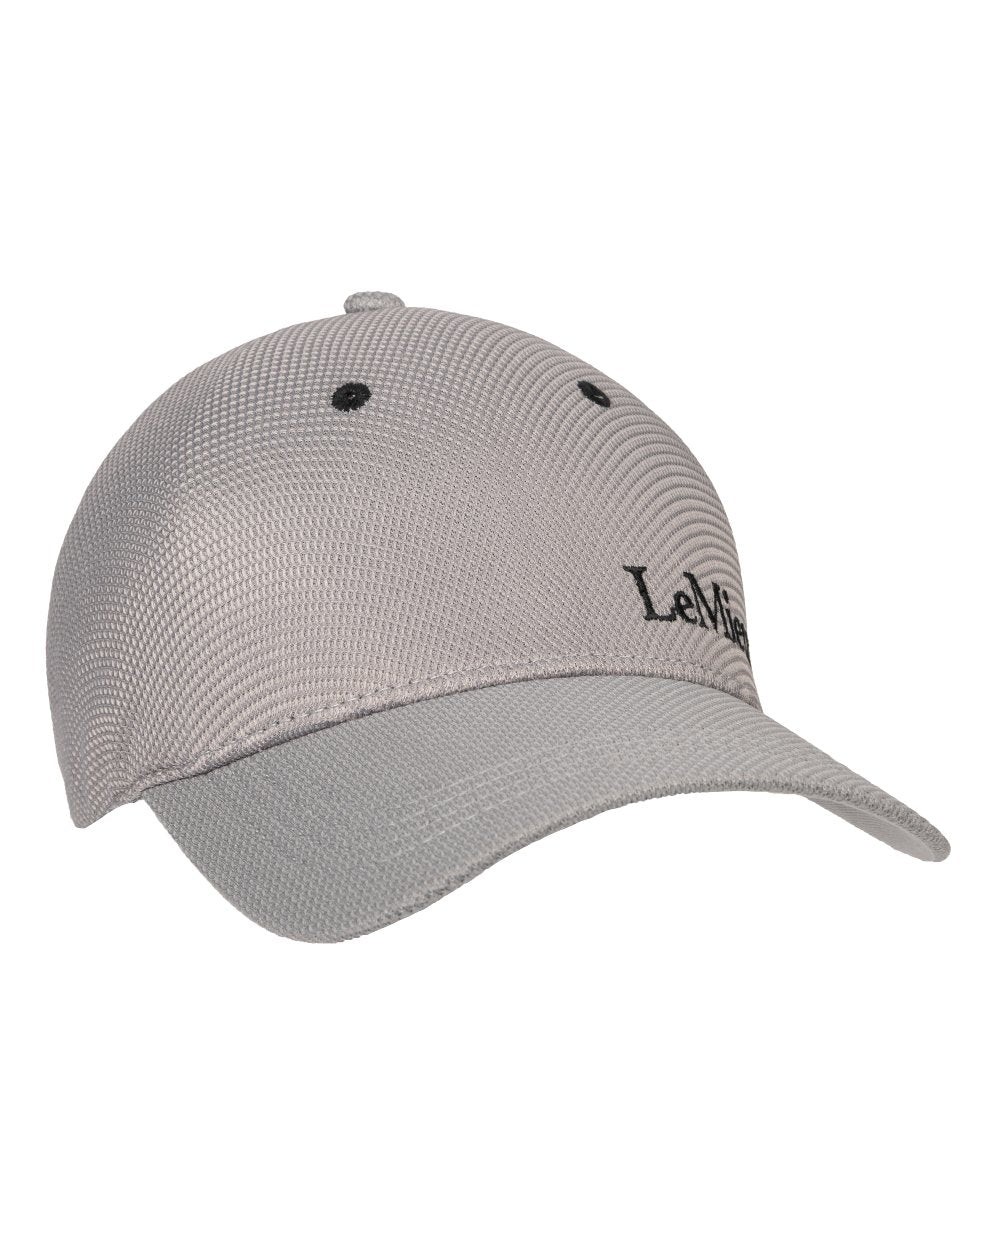 Grey coloured LeMieux Mesh Baseball Cap on white background 